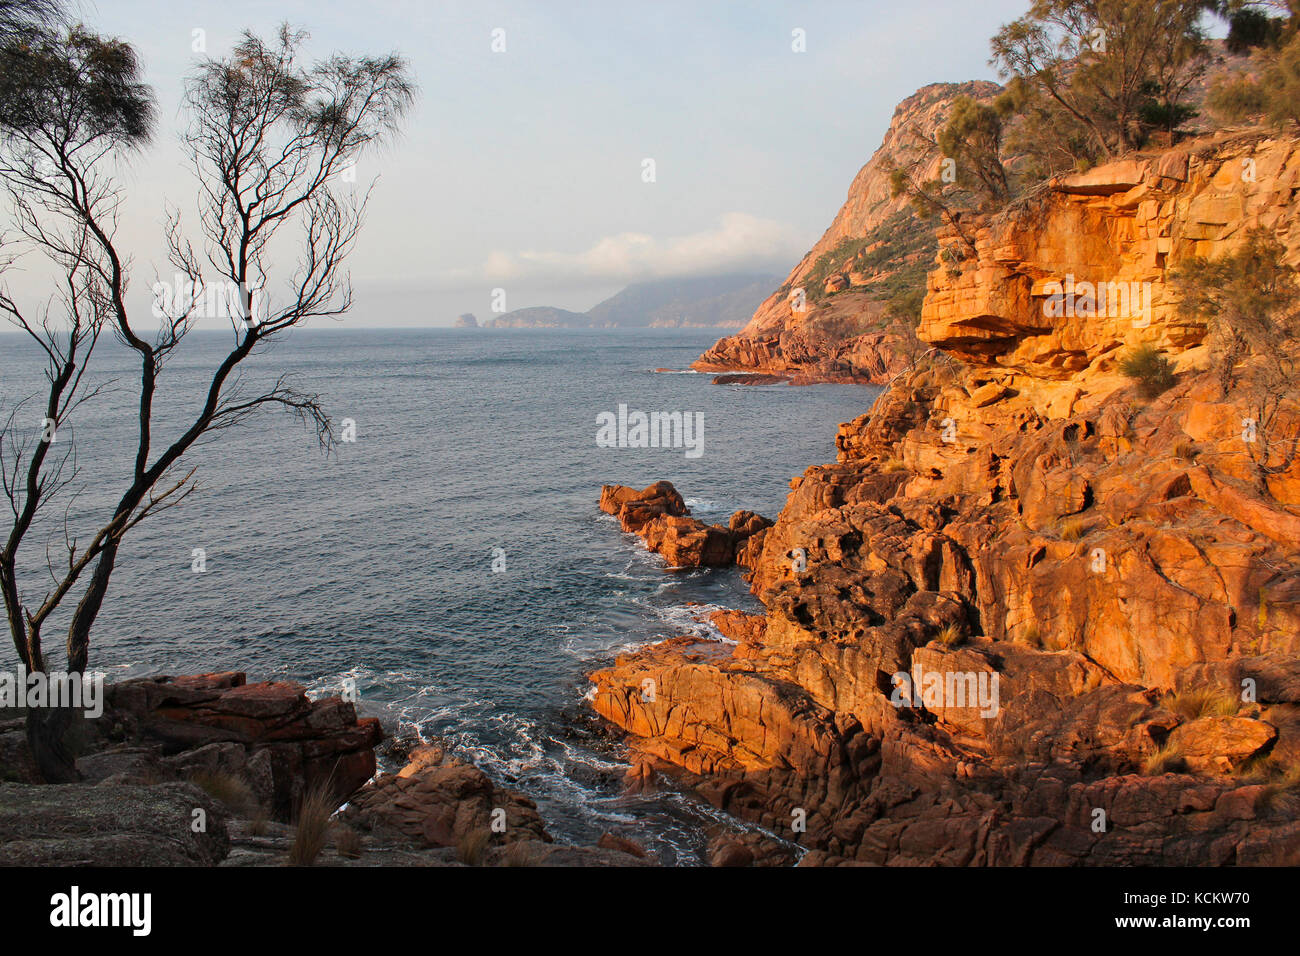 Côte sauvage à Sleepy Bay, avec Cape Forestier et Lemon Rock à distance. Coles Bay, parc national de Freycinet, Tasmanie, Australie Banque D'Images